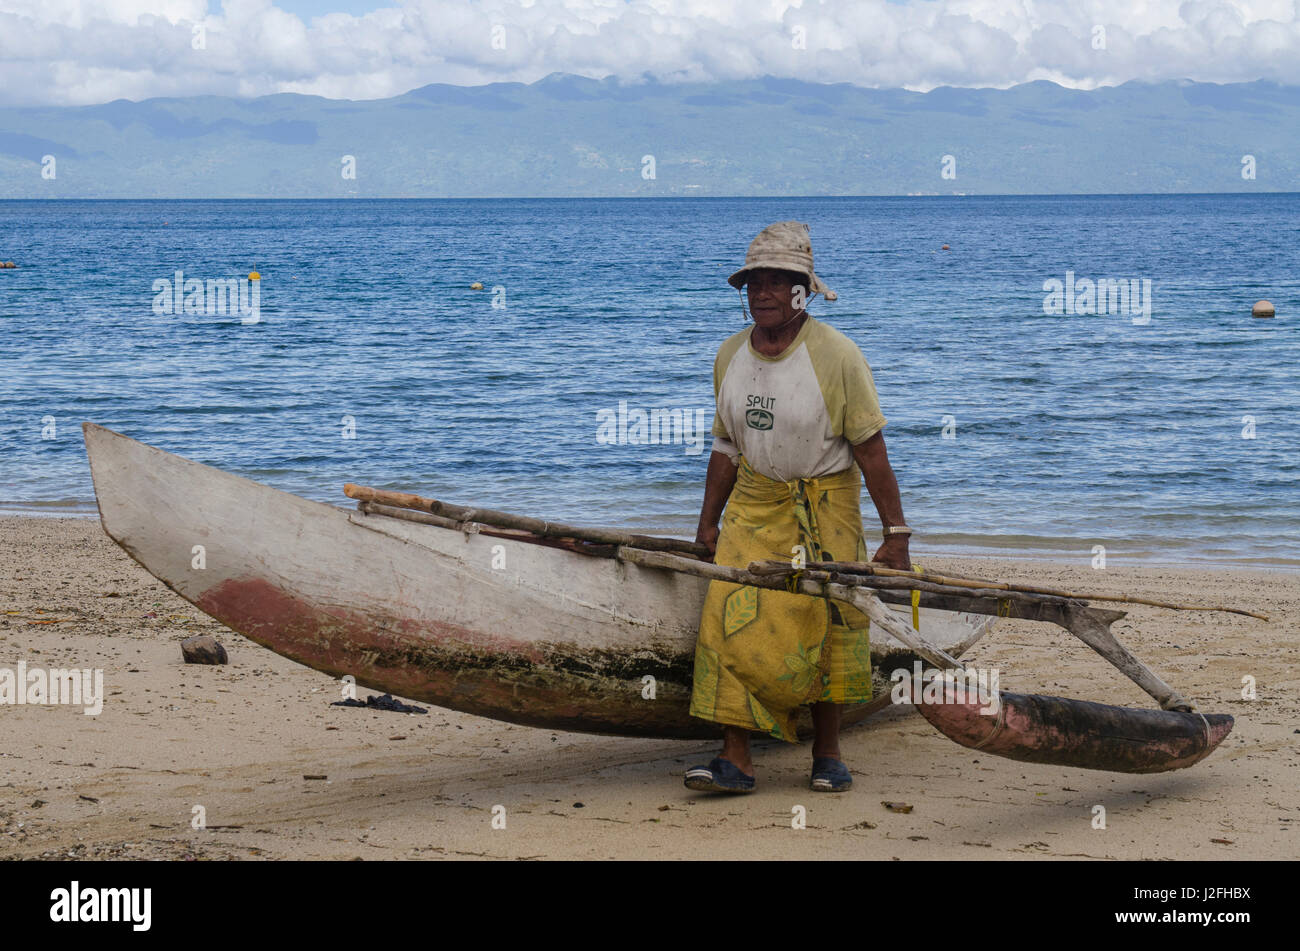 Outrigger fishing canoe, Kioa Island, Fiji Stock Photo - Alamy